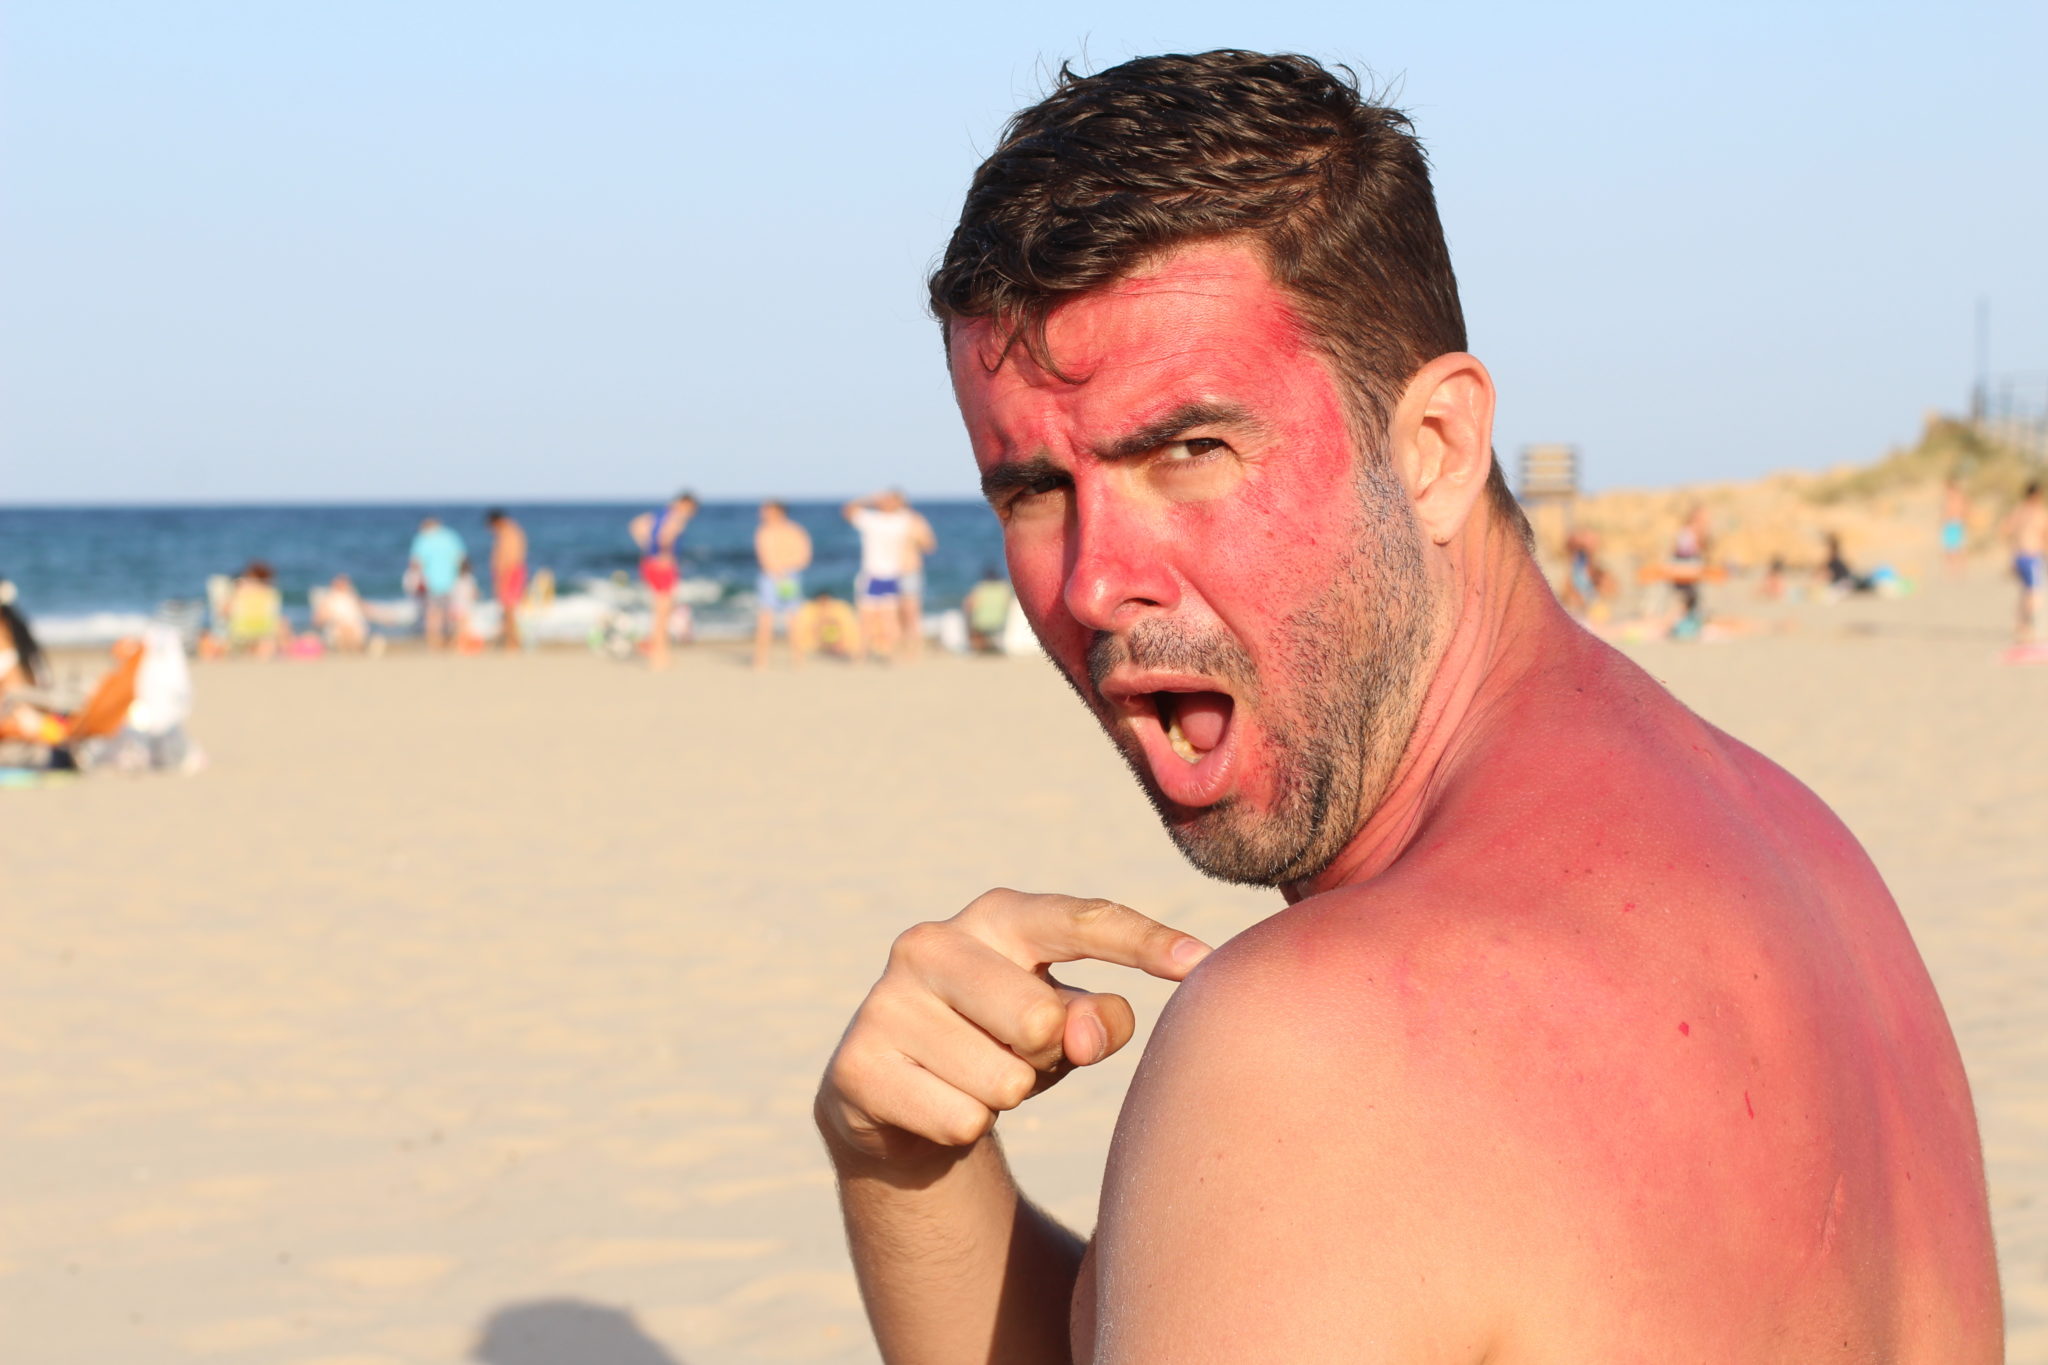 sunburned tourist